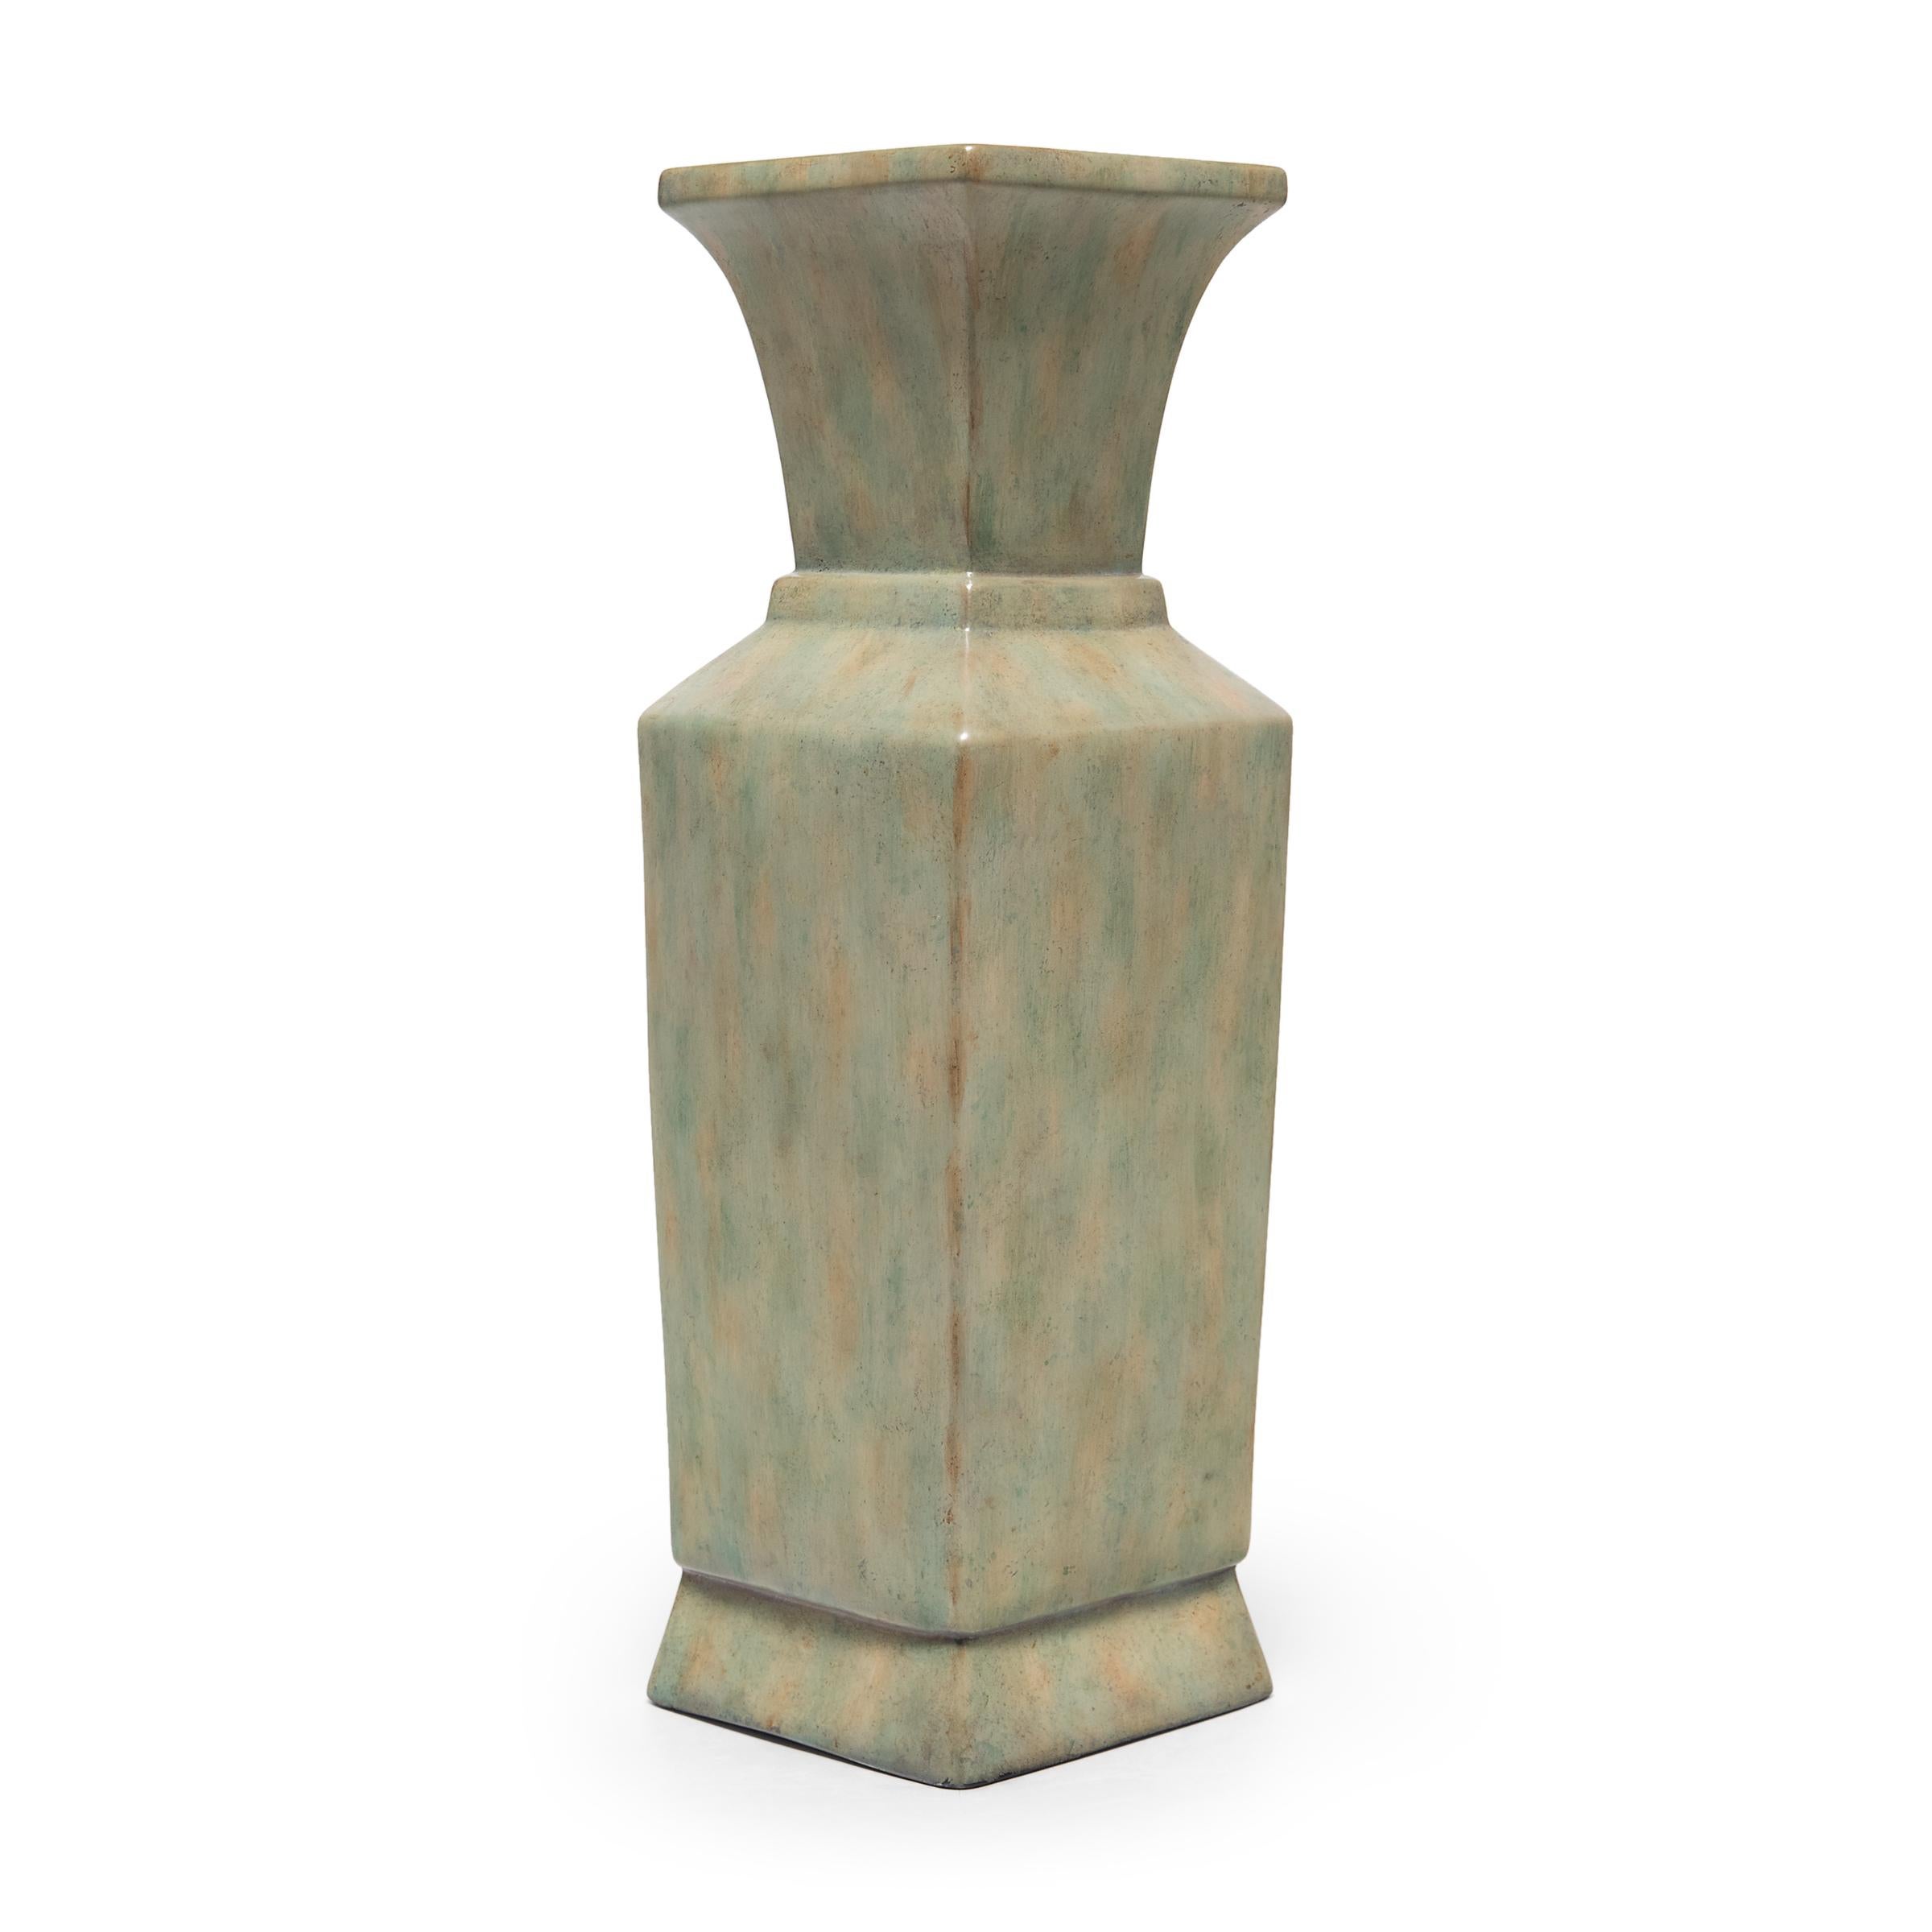 Itération contemporaine de la forme classique du vase chinois à queue de phénix, cette grande urne en porcelaine de la maison de design d'intérieur Maitland/One présente un corps carré avec des épaules anguleuses et un sommet évasé. Une glaçure